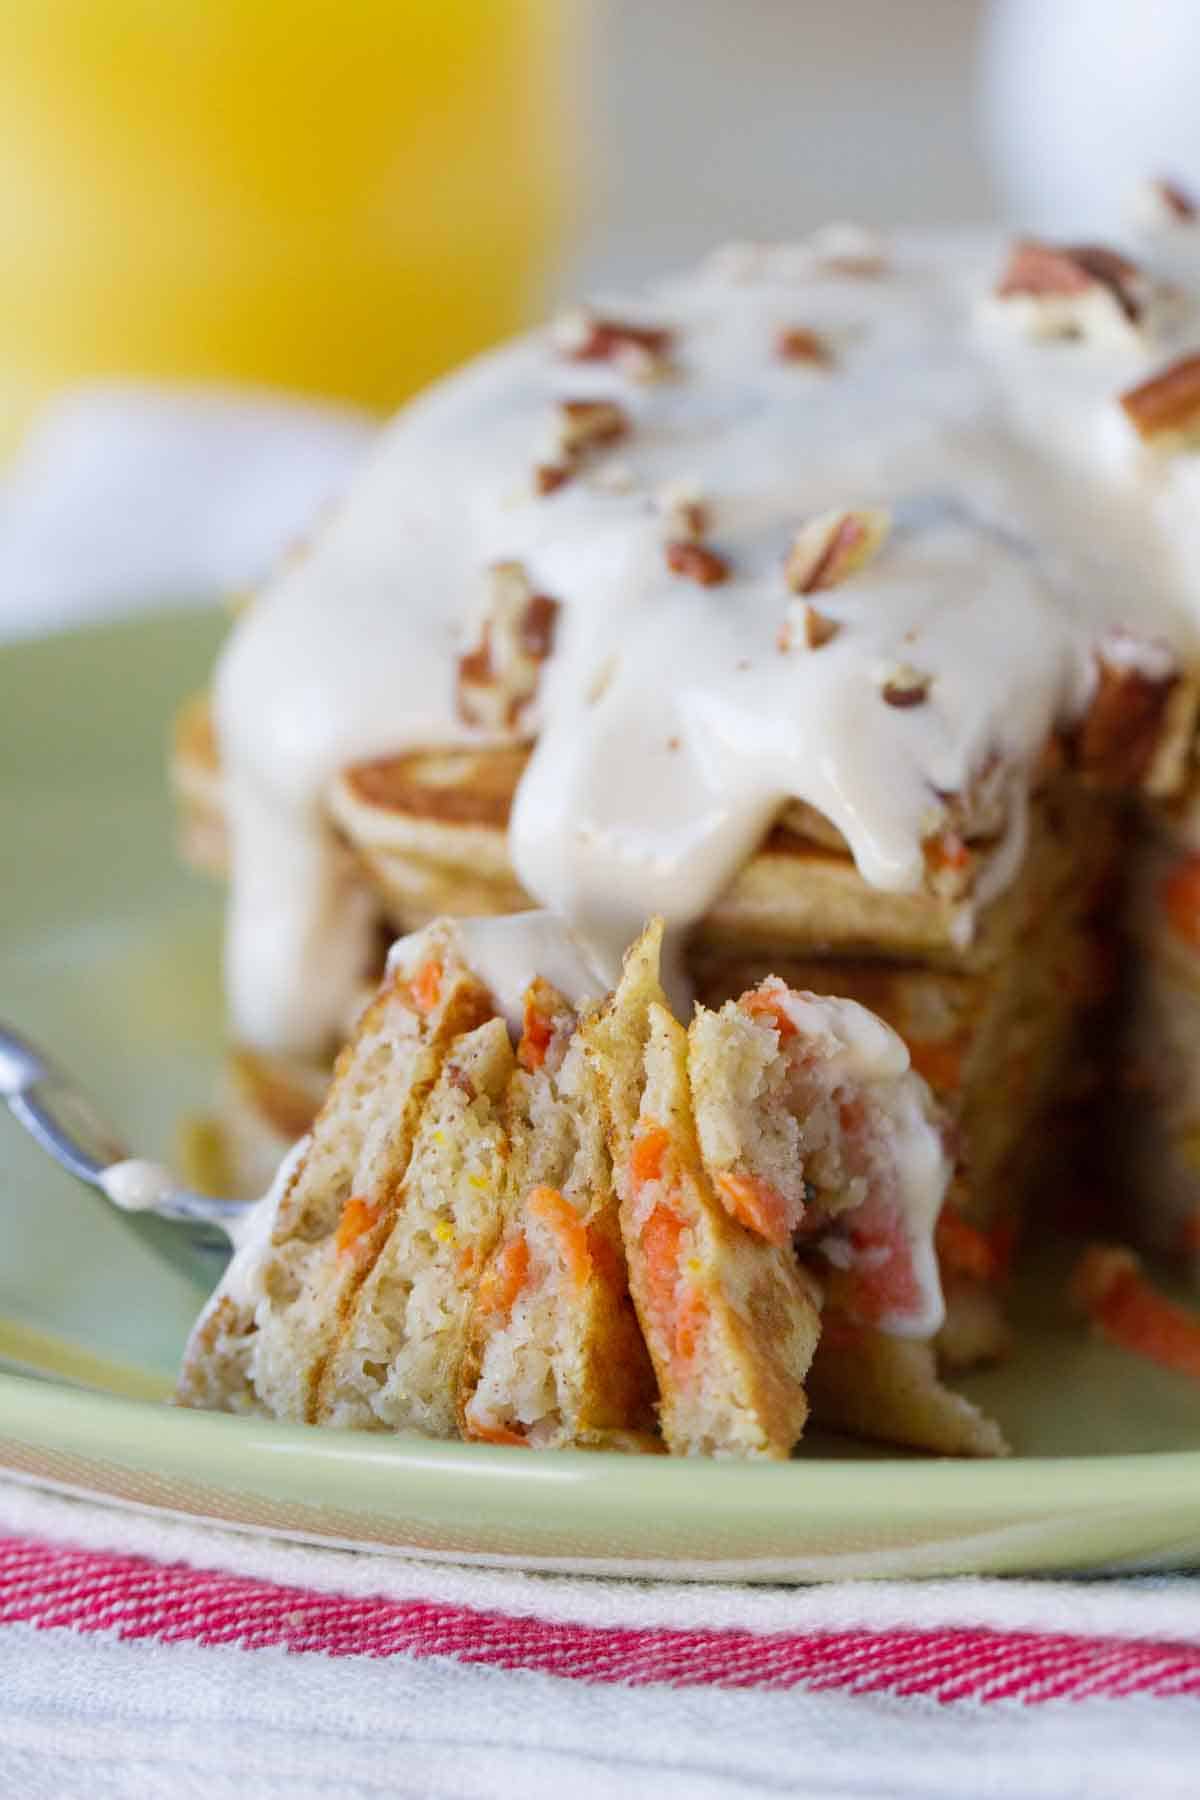 forkful of carrot cake pancakes showing interior